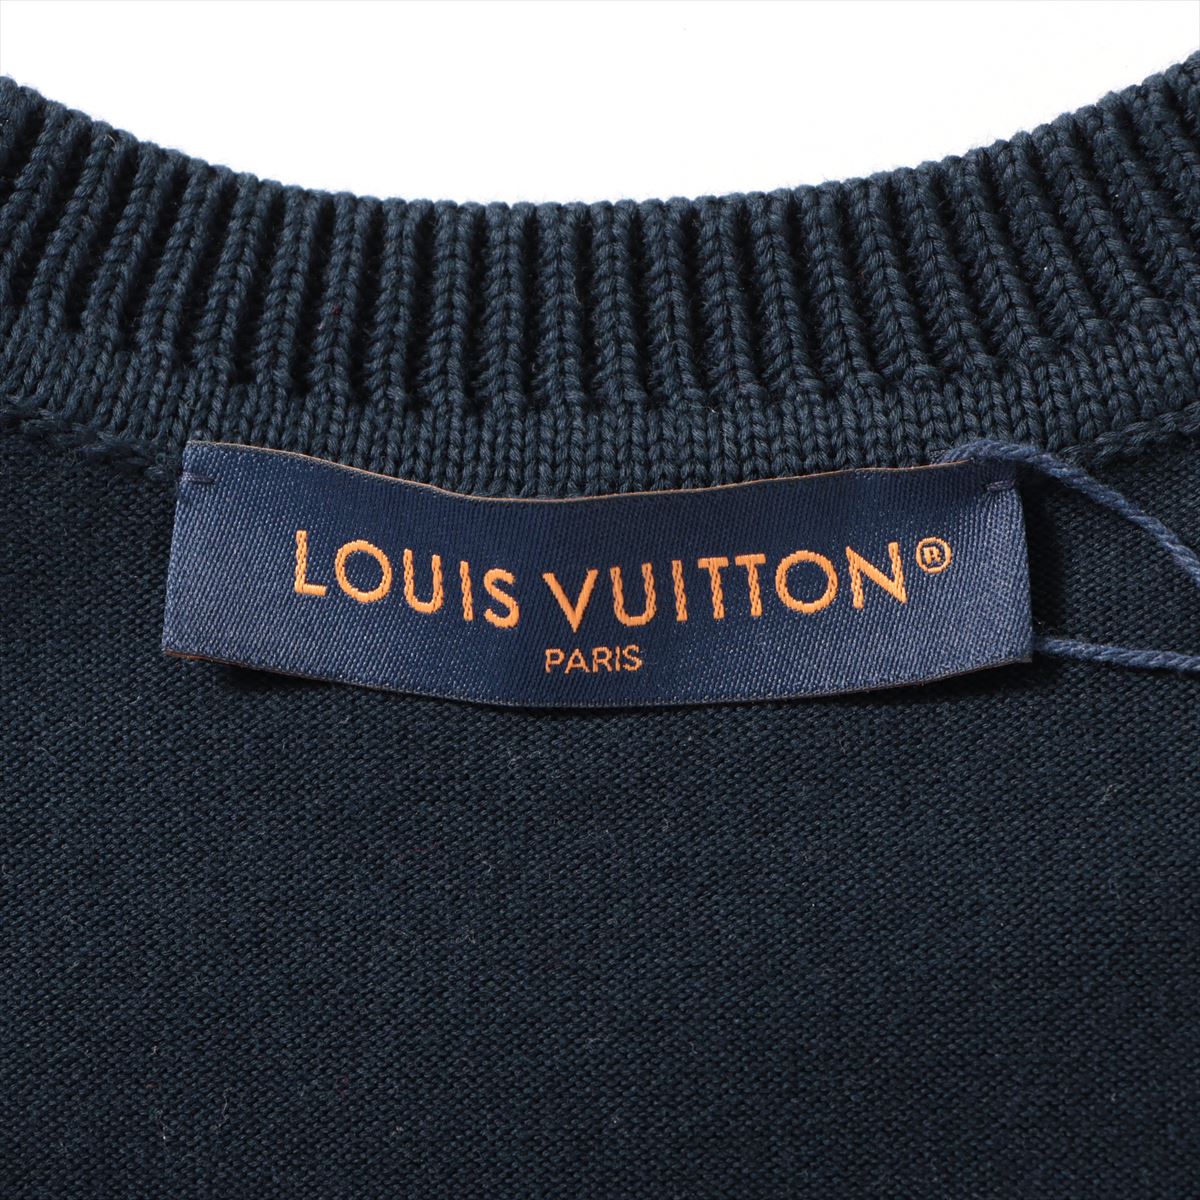 Louis Vuitton 24SS Cotton Short Sleeve Knitwear XS Men's Navy blue  RM241MQ Signature